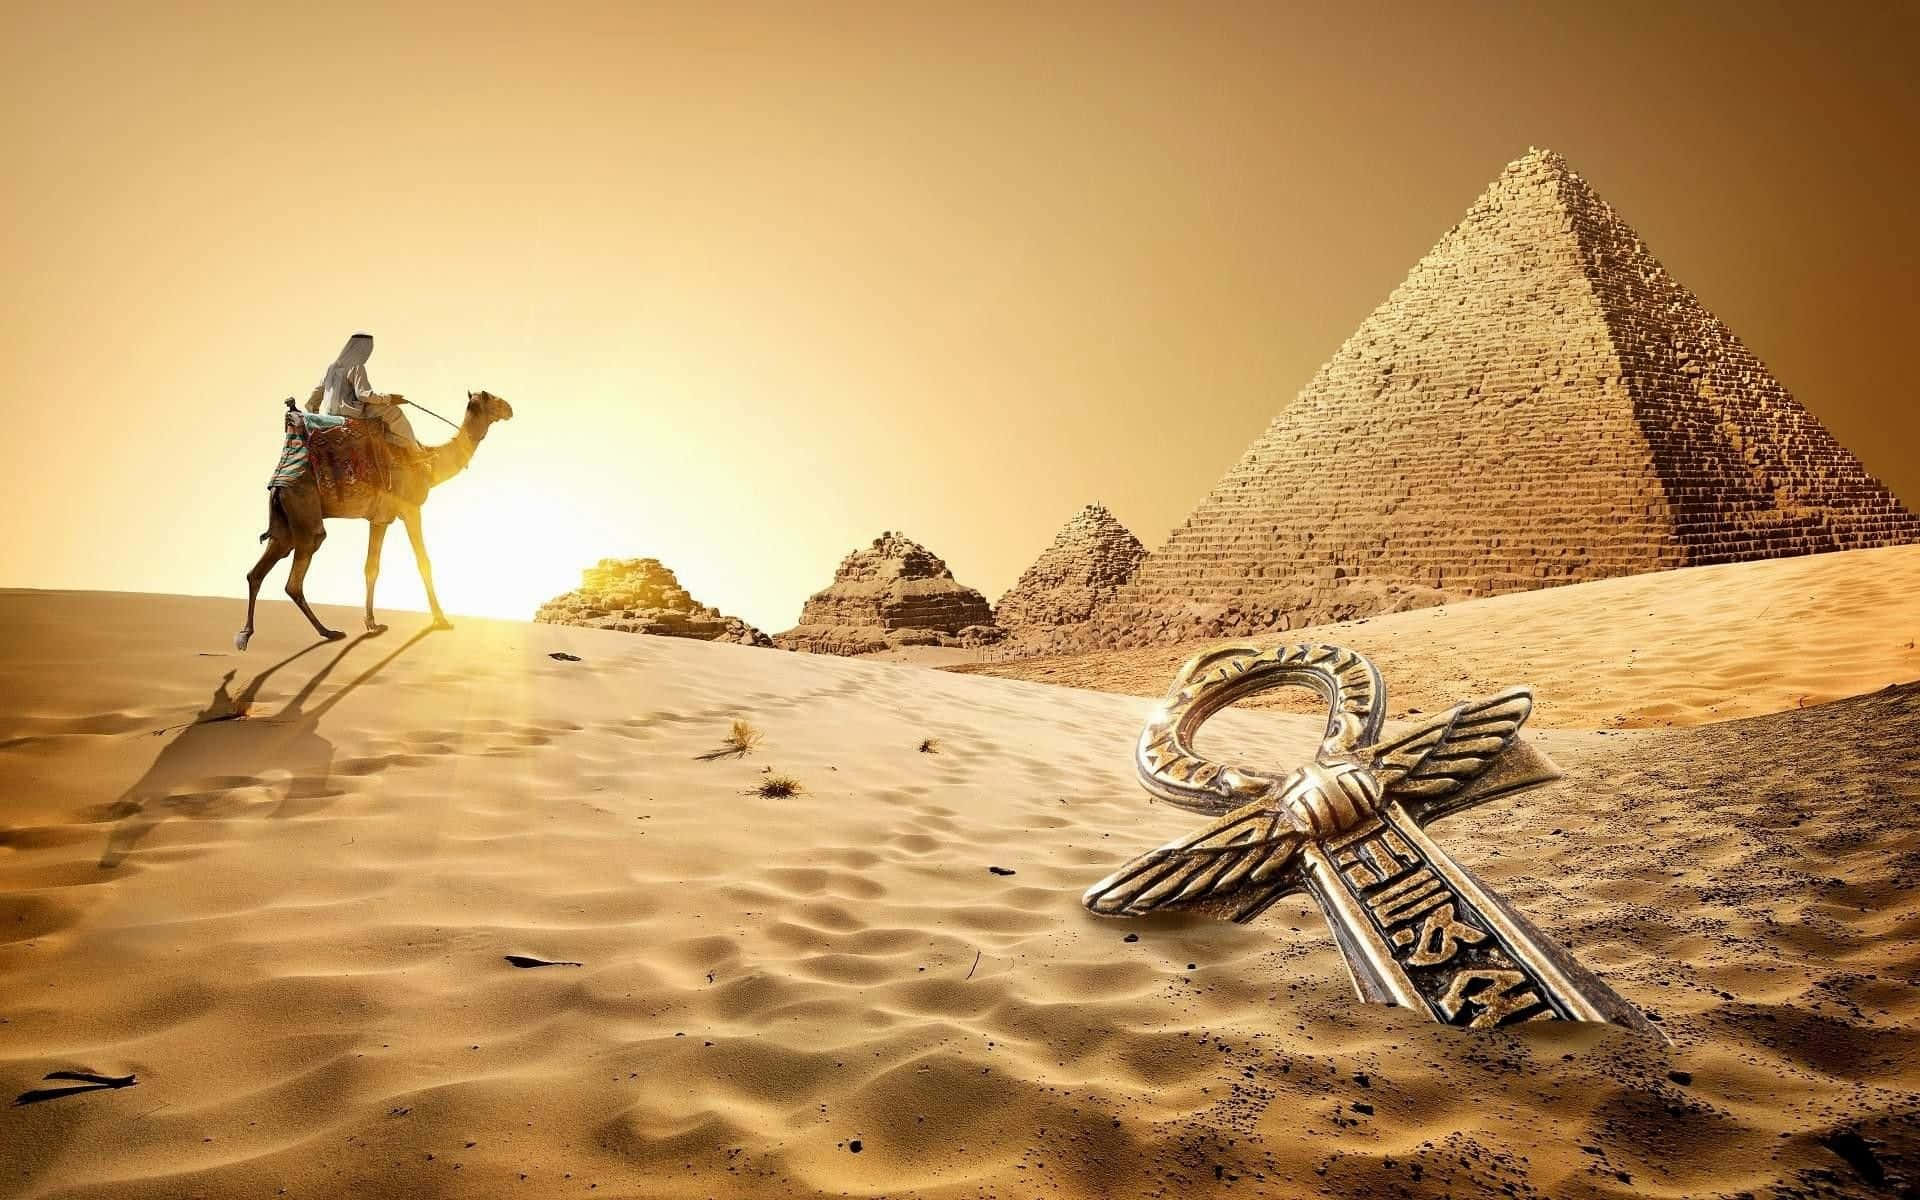 Einkamel Steht In Der Wüste Mit Einer Pyramide Im Hintergrund. Wallpaper